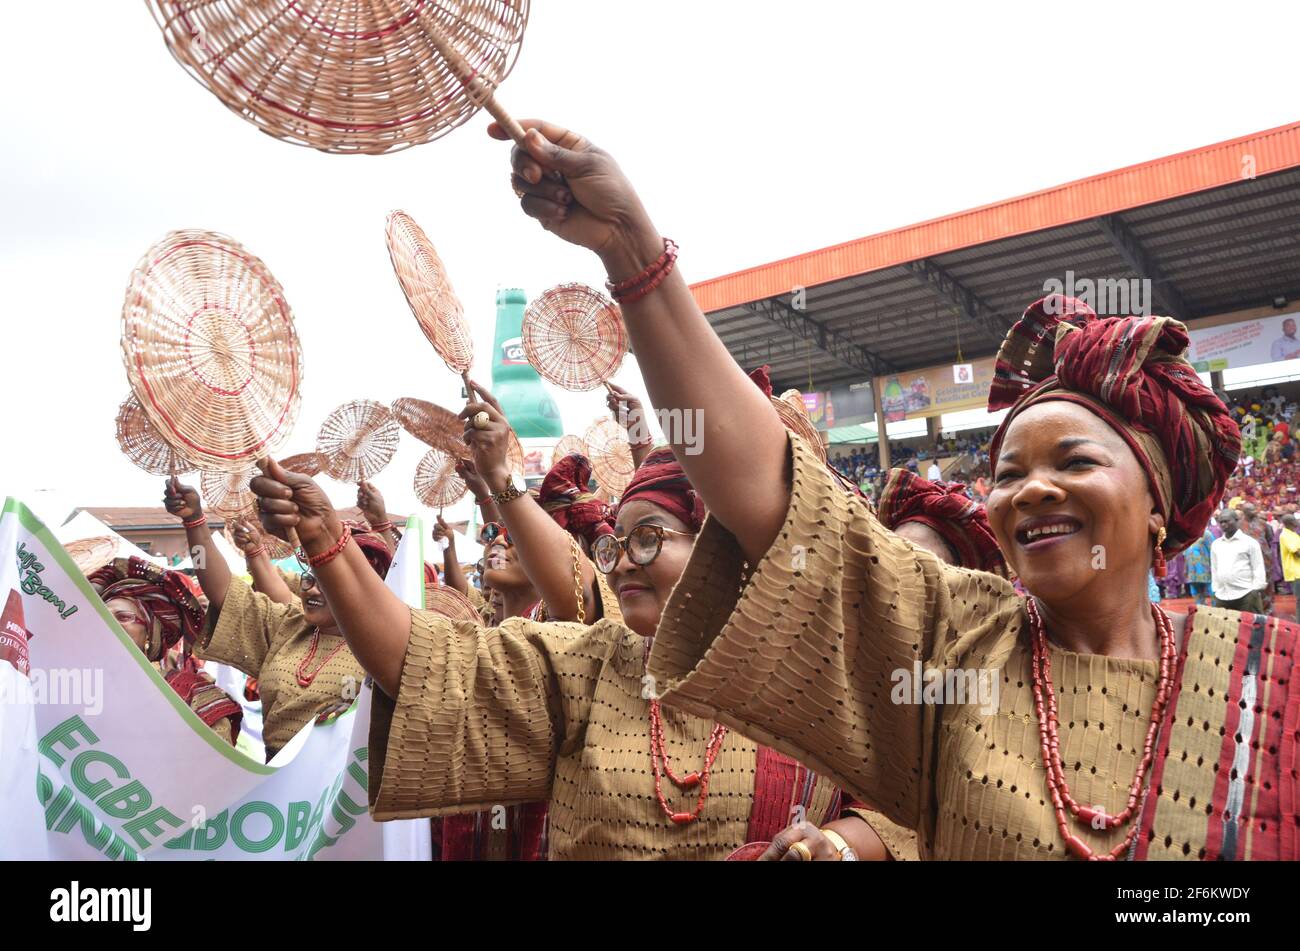 Les femmes nigérianes présentent leur tenue traditionnelle en rendant hommage à la règle traditionnelle de la terre d'Ijebu lors du festival Ojude Oba au Nigeria. Banque D'Images